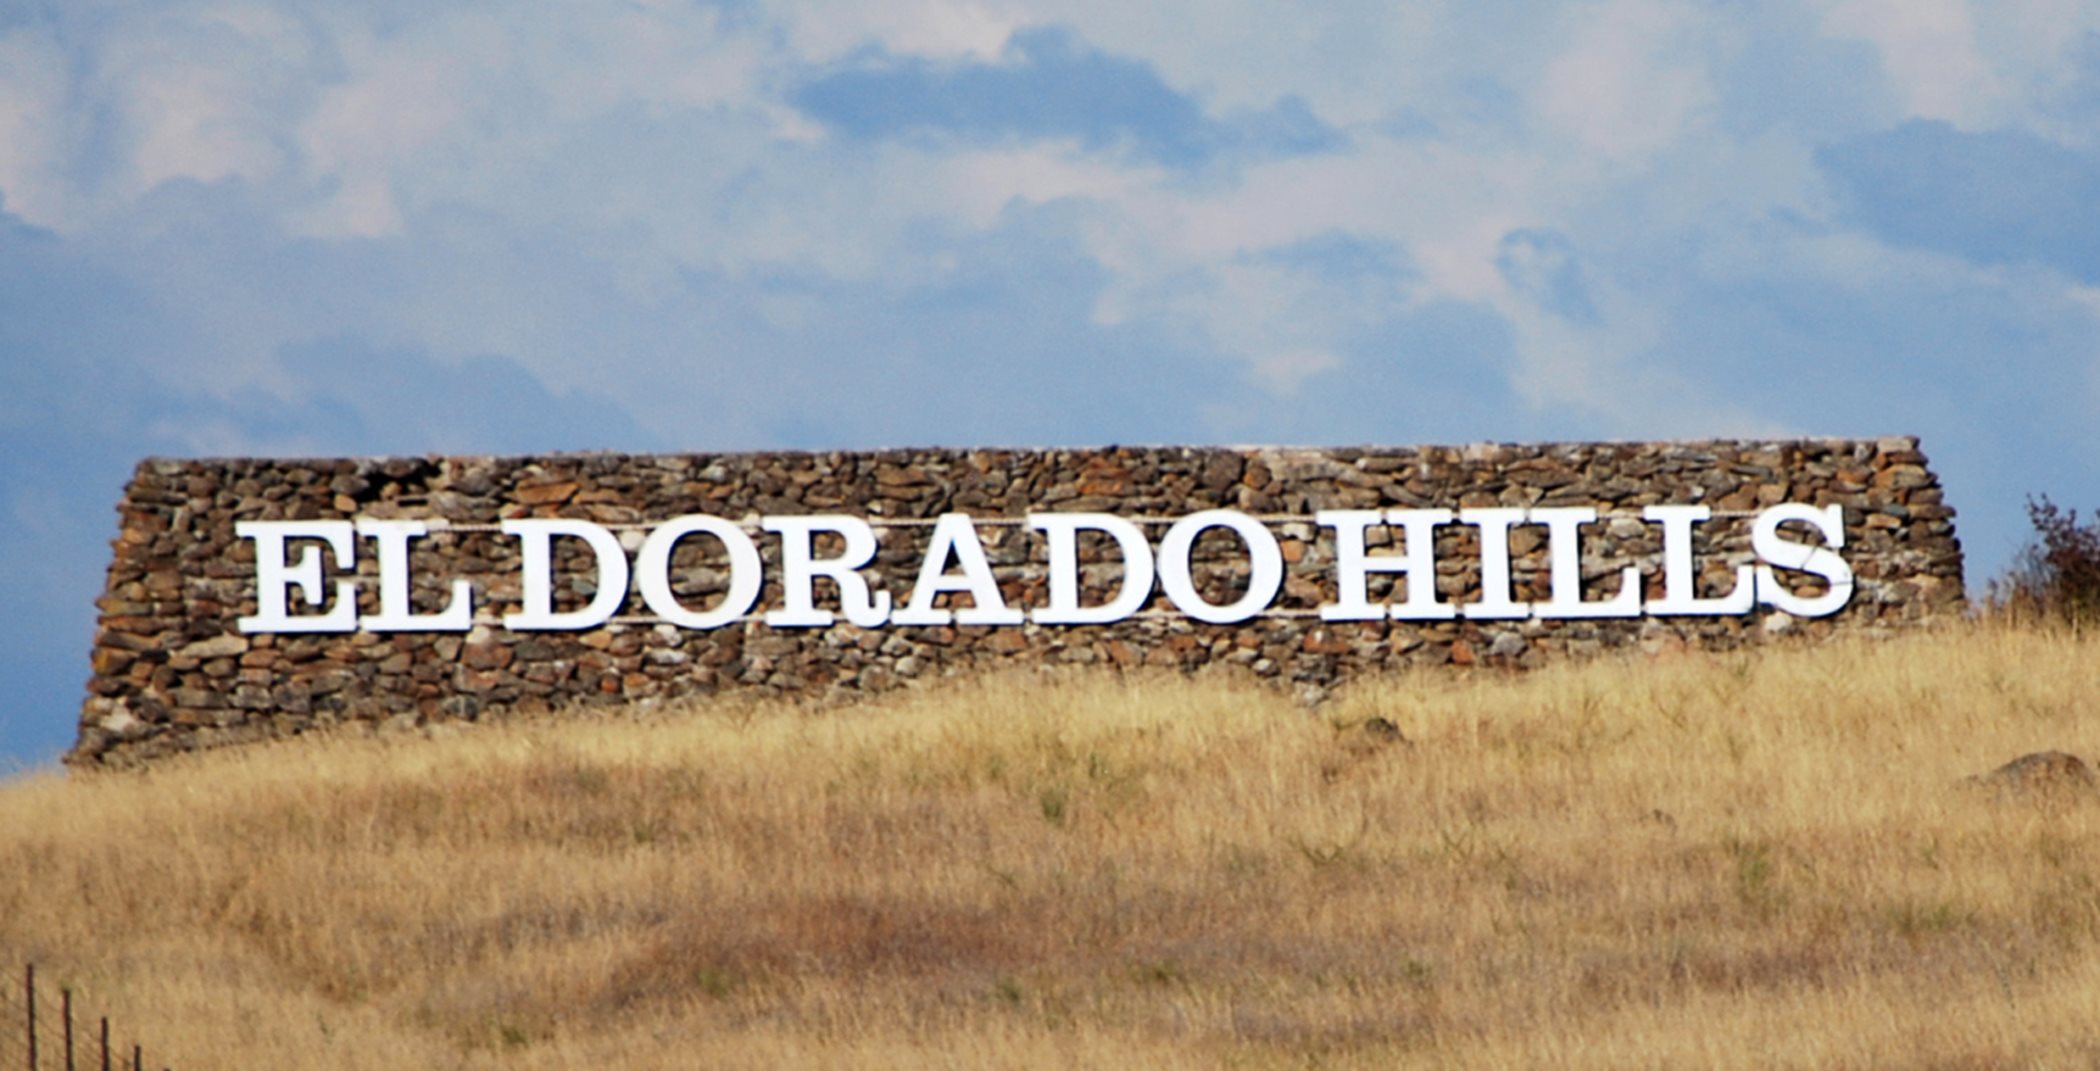 El Dorado Hills monument sign